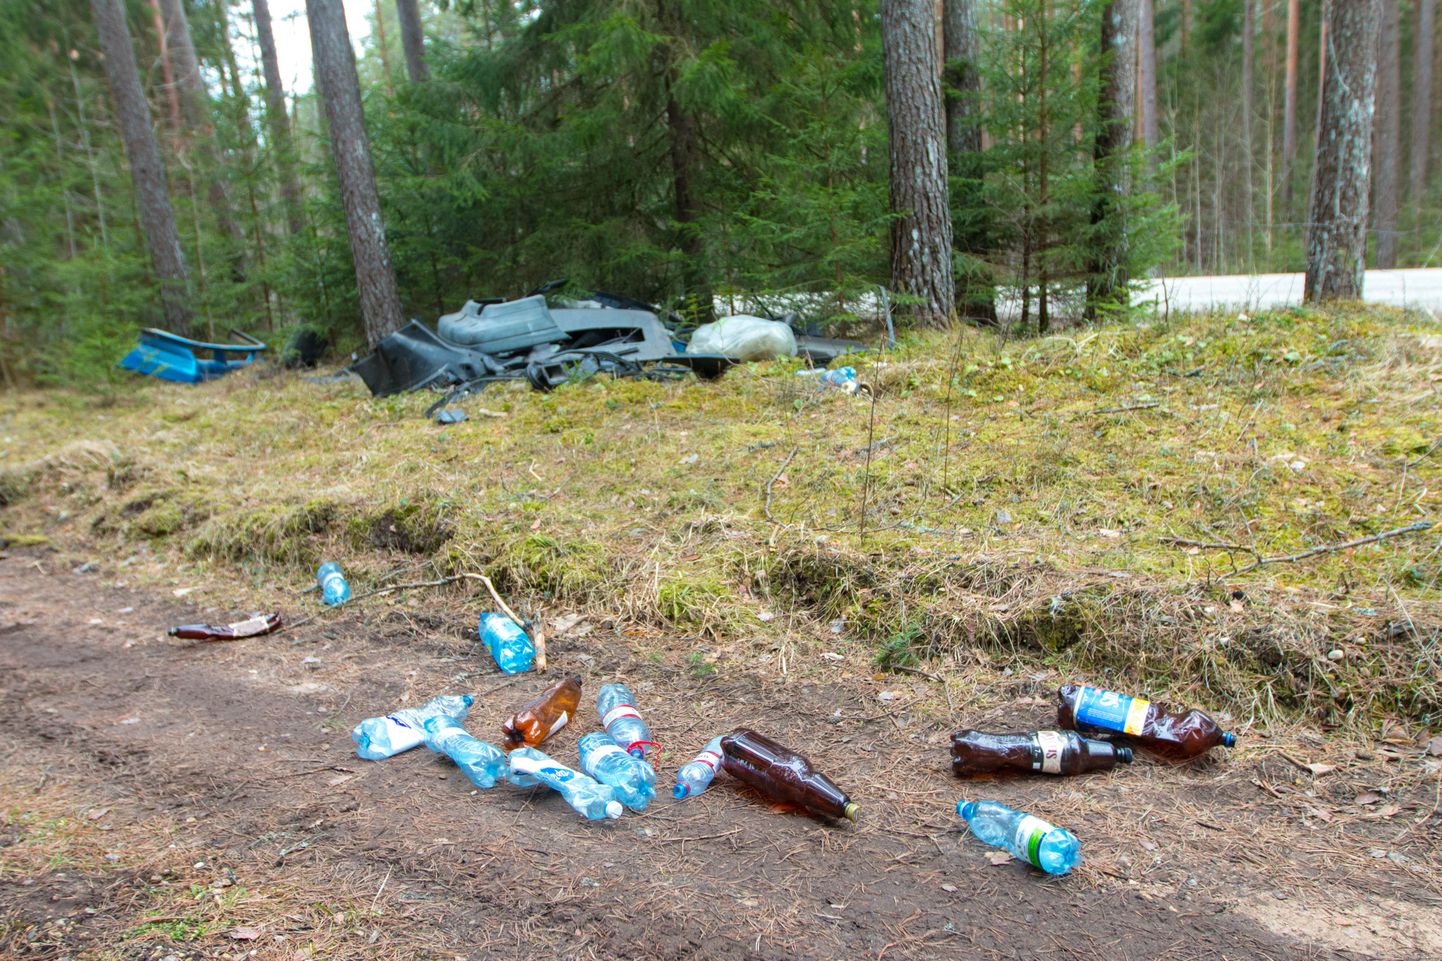 Lätikeelsete kirjadega, valdavalt pooleteise-kaheliitriseid pudelid võis hulgaliselt leida ka metsateelt.